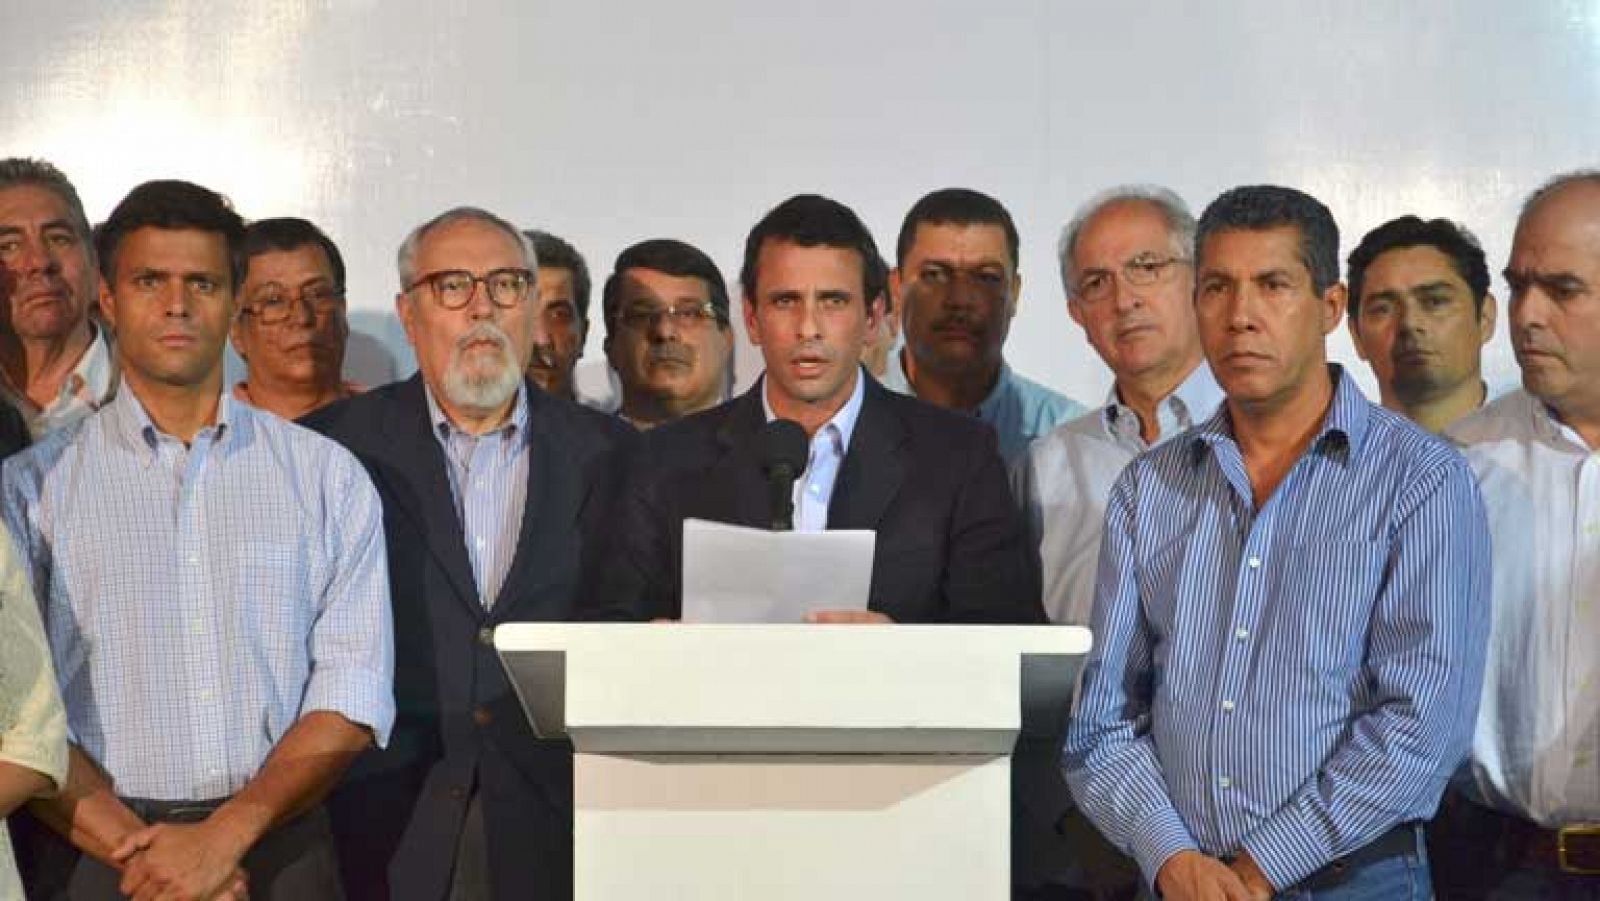 El opositor Capriles da condolencias a familia de Chávez y pide respeto a la Constitución